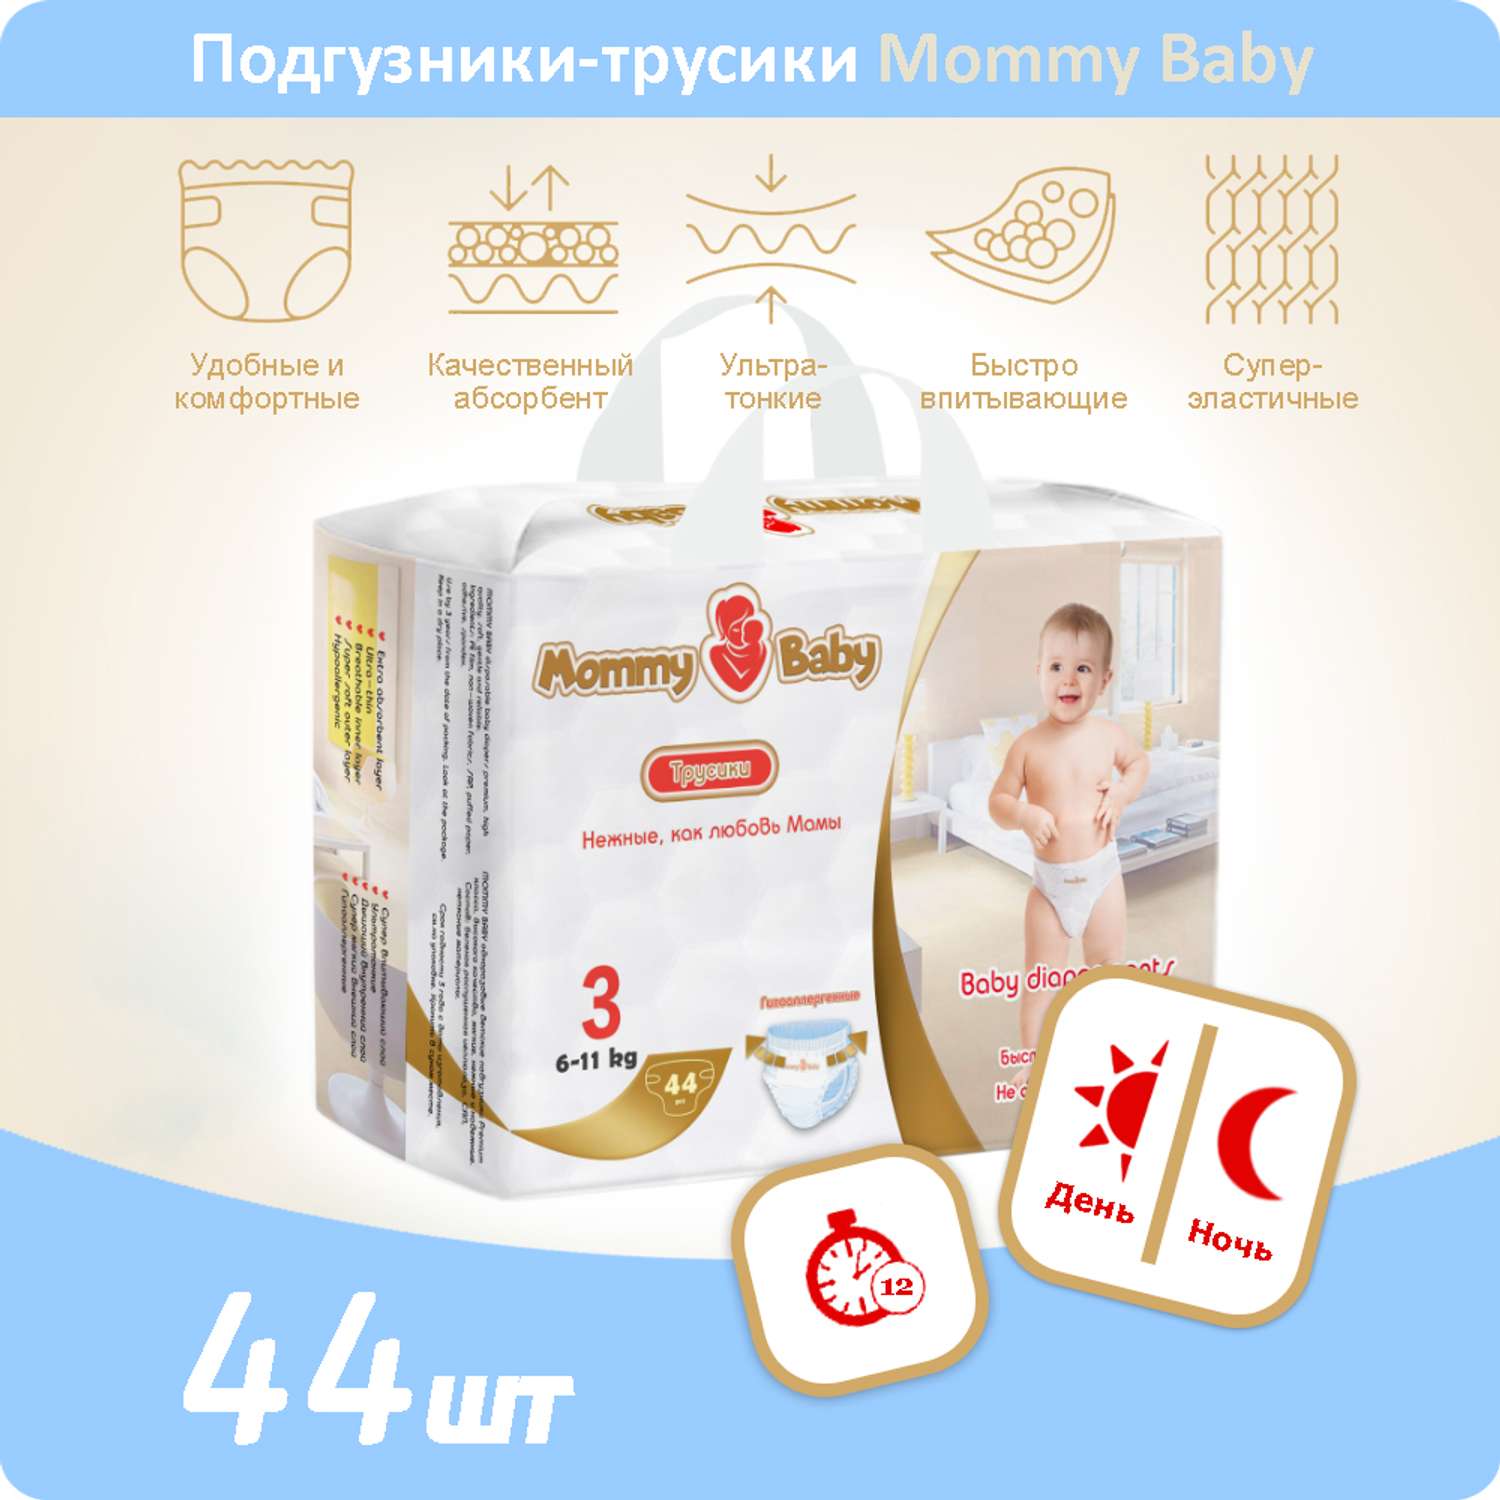 Подгузники-трусики Mommy Baby Размер 3. 44 штуки в упаковке 6-11 кг - фото 1